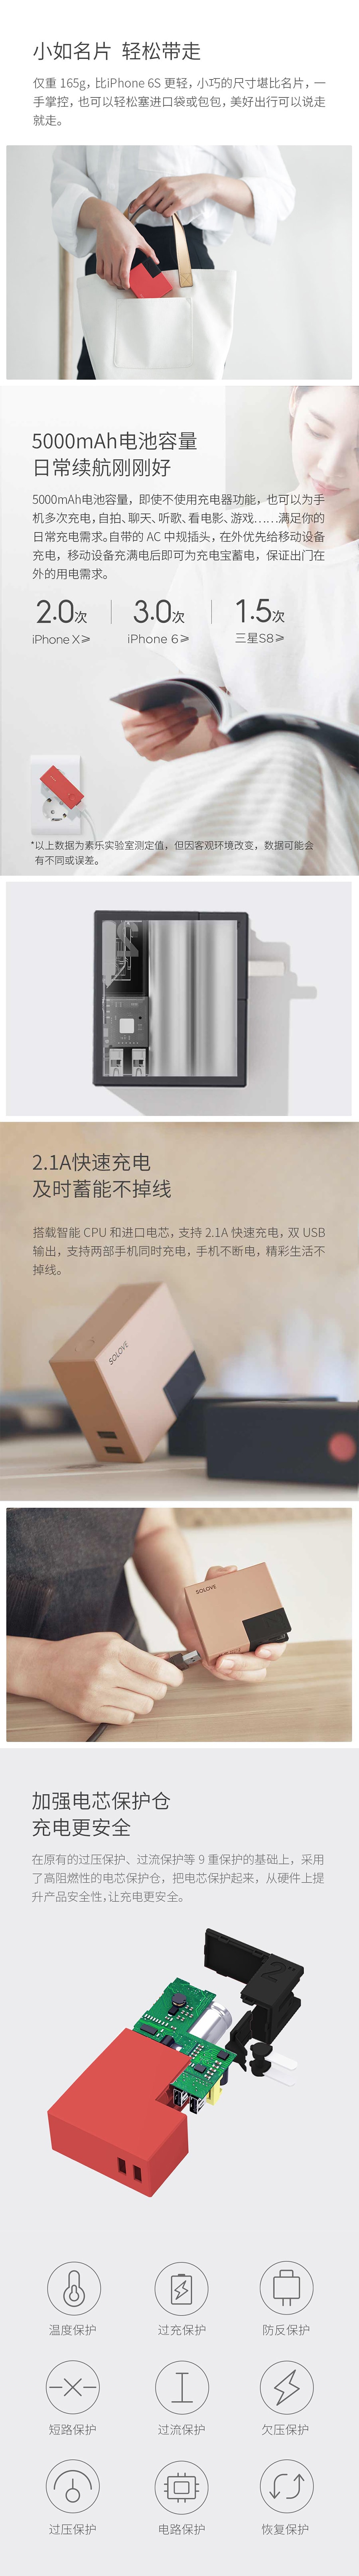 【中国直邮】小米有品SOLOVE旅行充电器 W2珊瑚红5000mAh 1件/盒